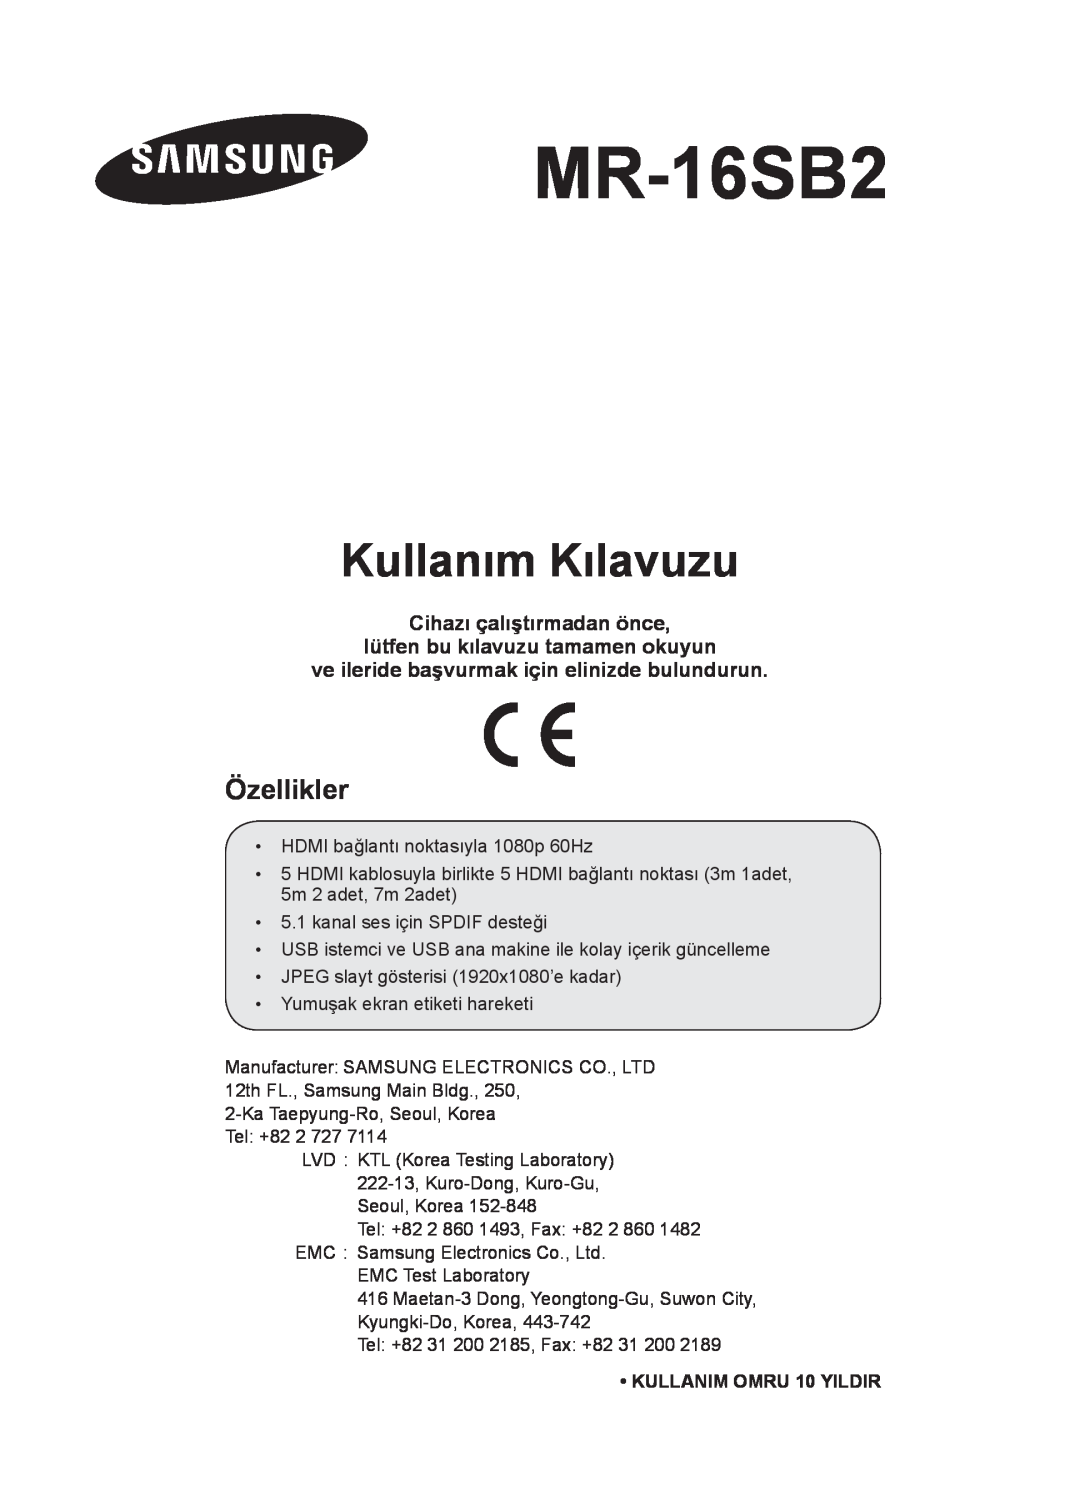 Samsung MR-16SB2 manual Kullanım Kılavuzu, Özellikler, Cihazı çalıştırmadan önce lütfen bu kılavuzu tamamen okuyun 